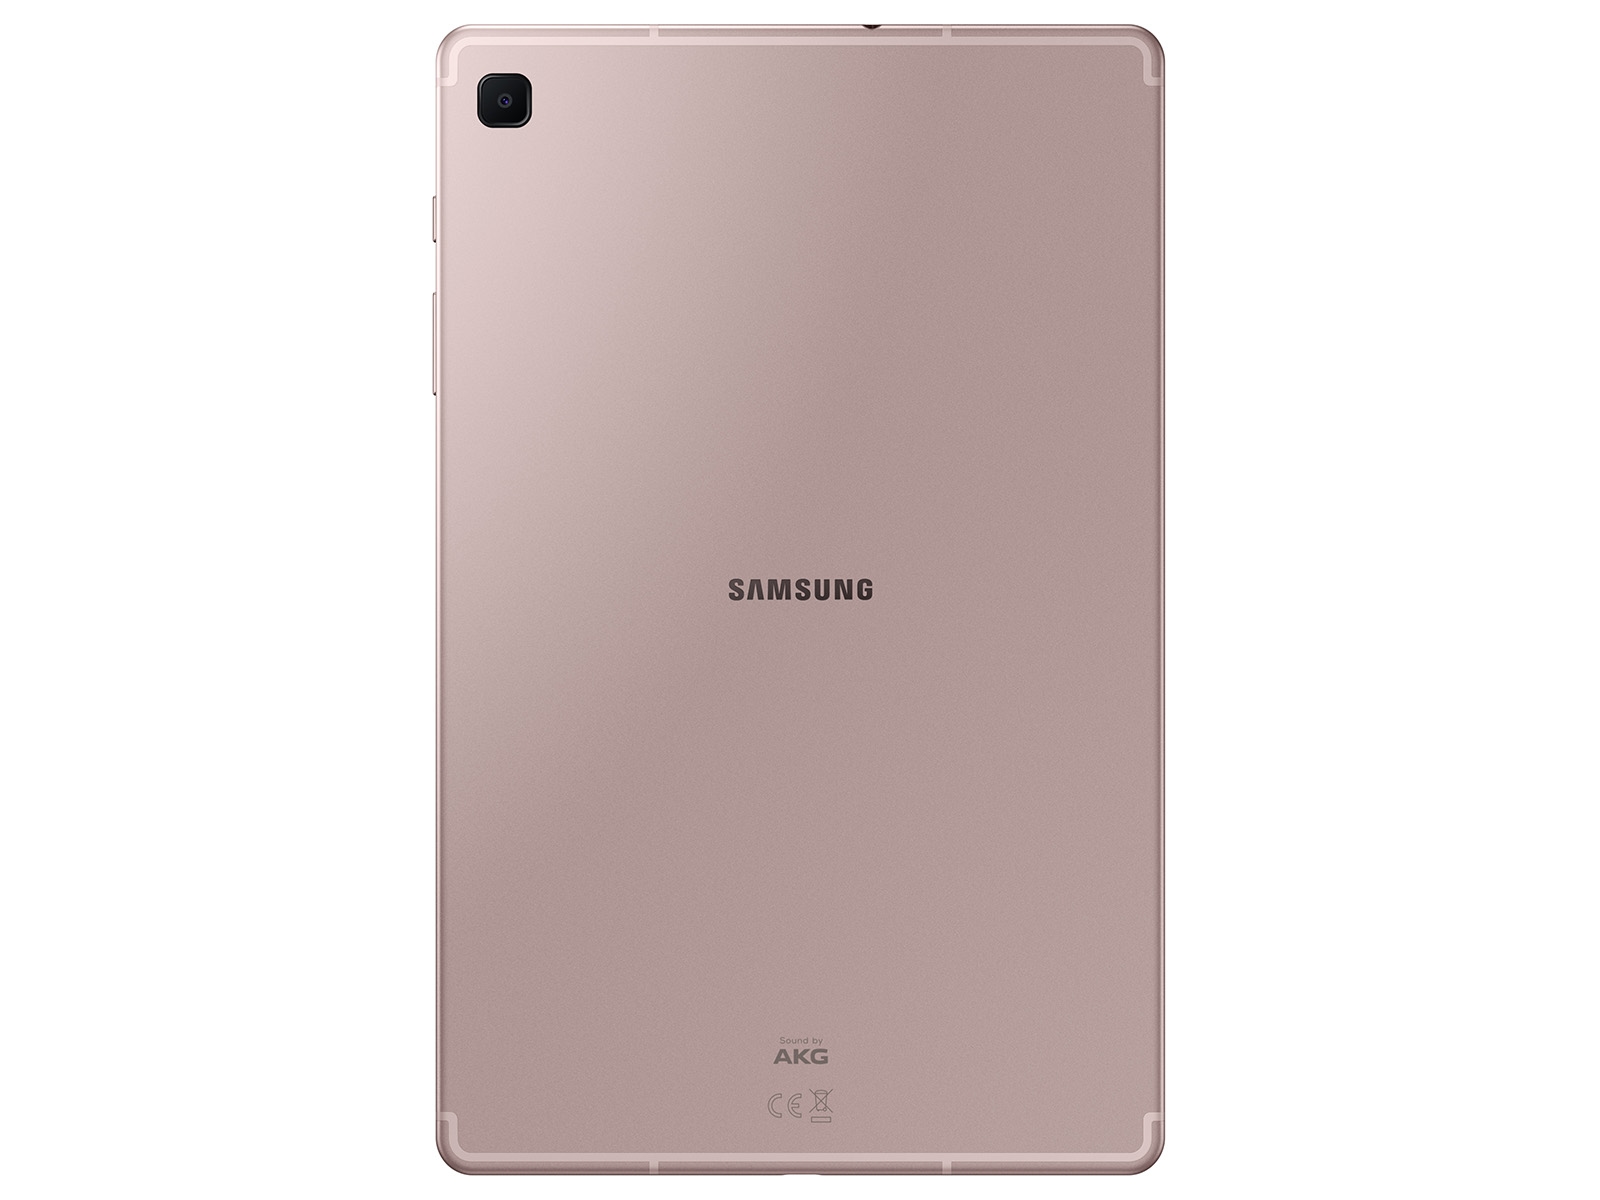 Galaxy Tab S6 Lite 64GB Chiffon Rose Tablets - SM-P613NZIAXAR